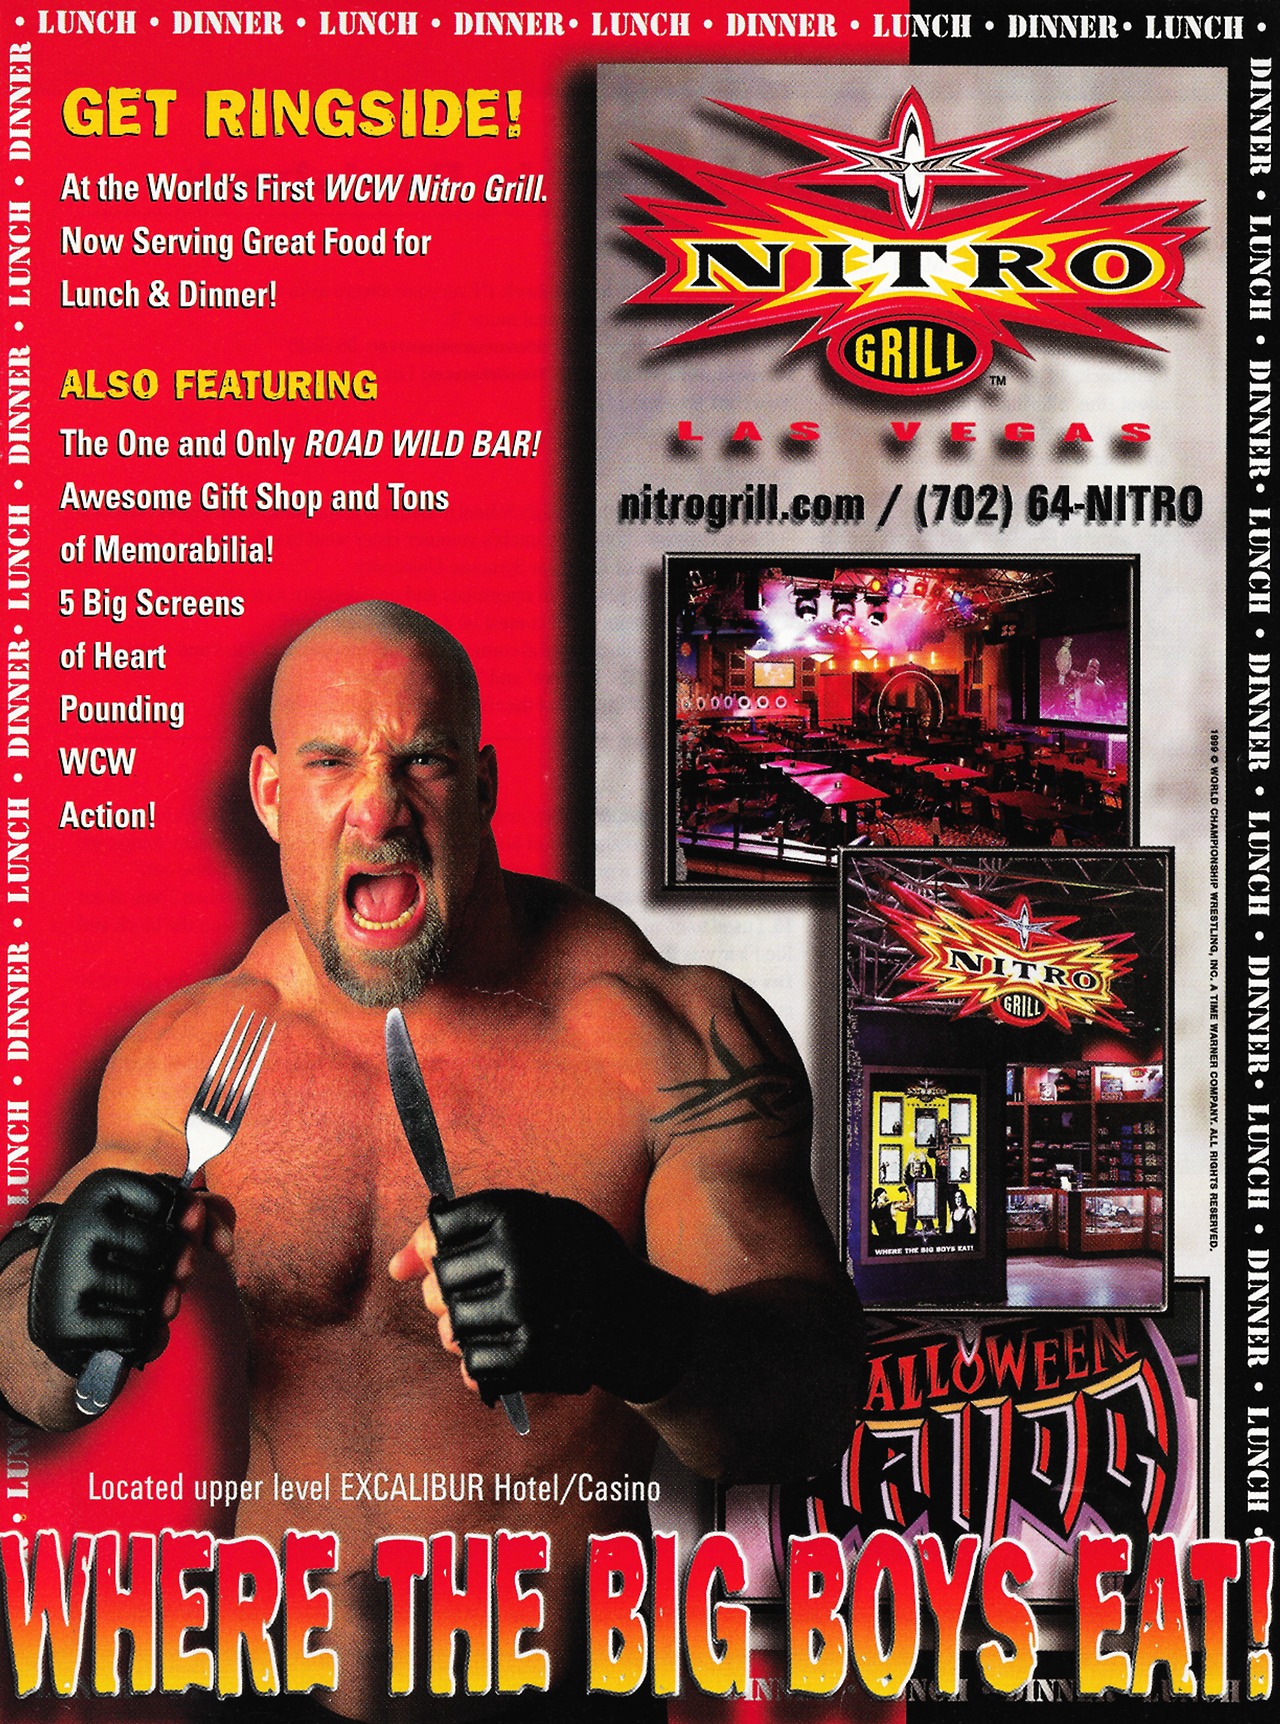 WCW Nitro Grill ad